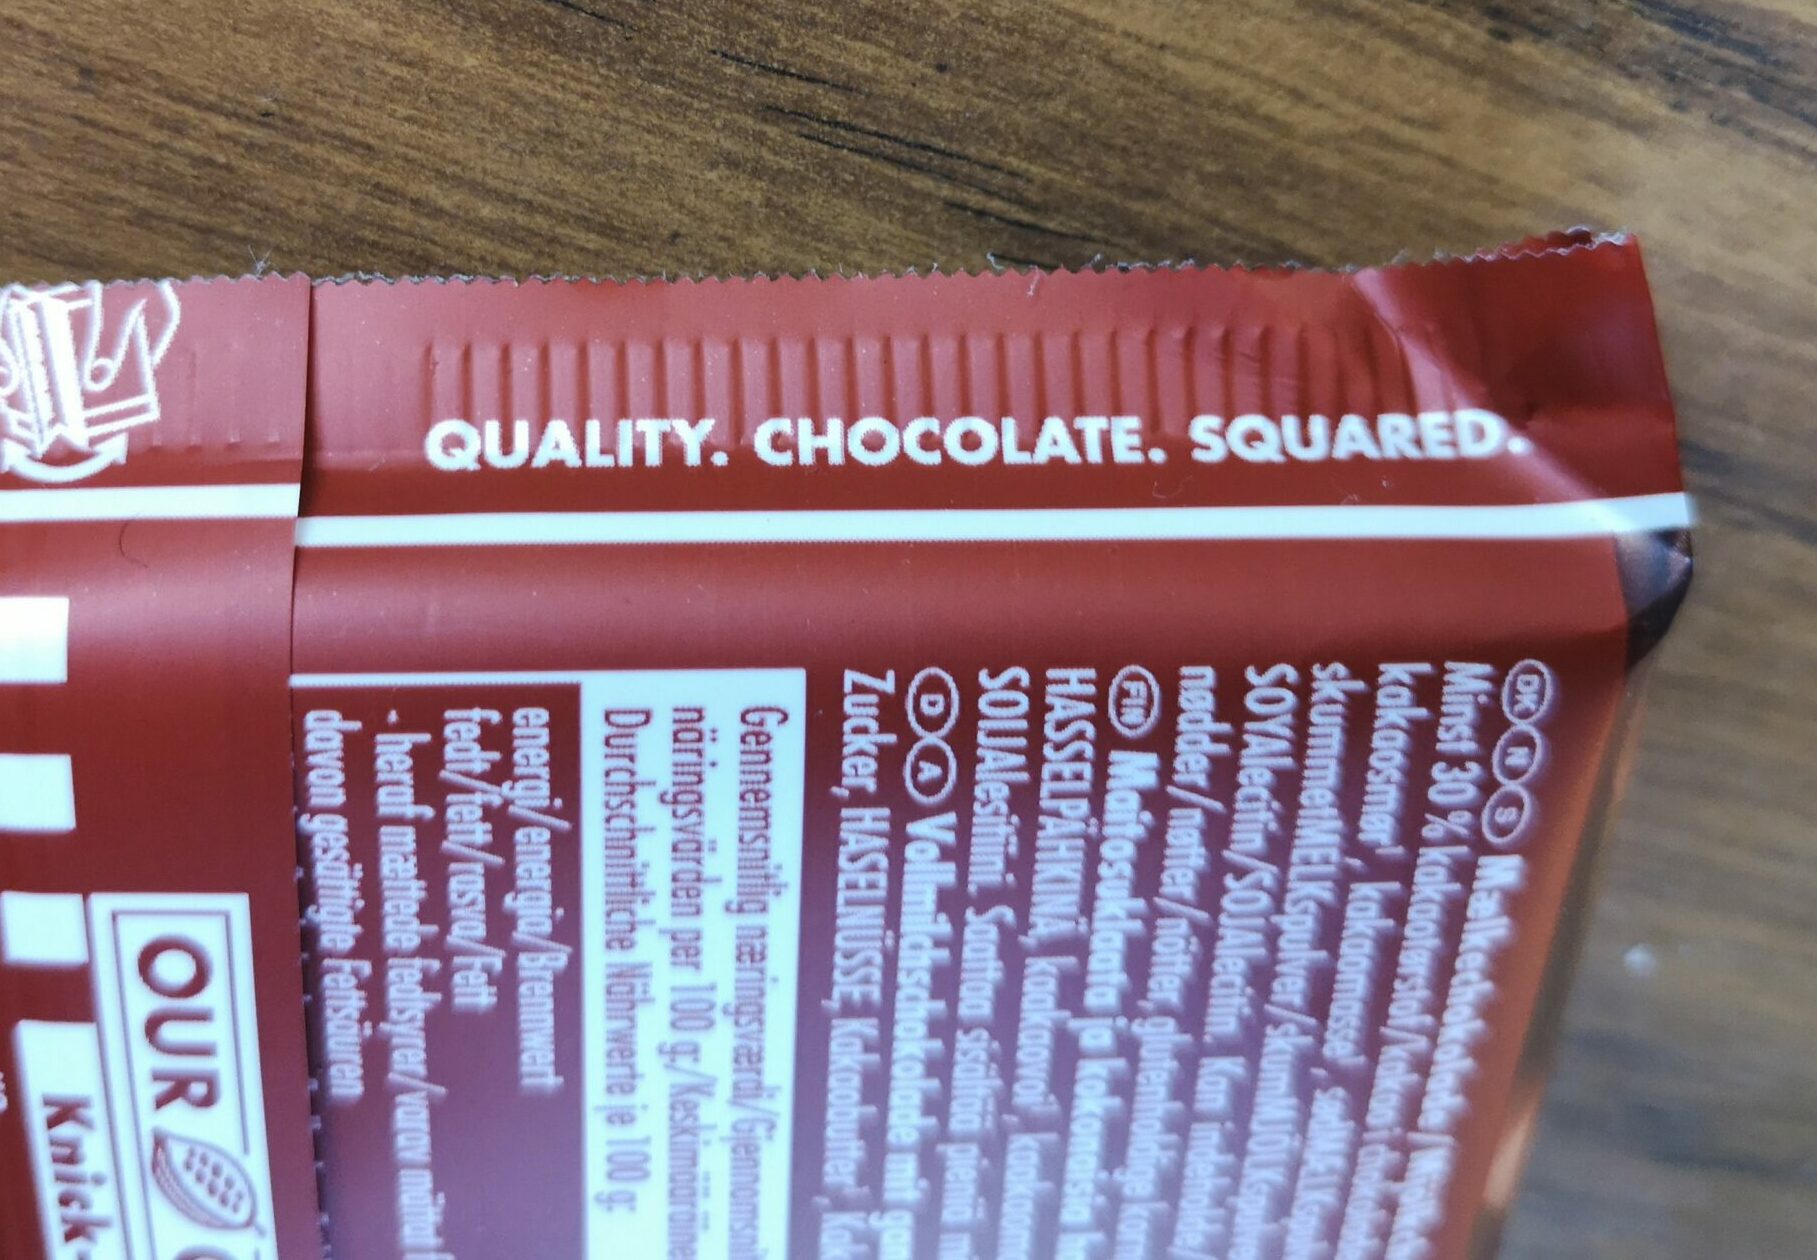 Närbild på en förpackning choklad av märket Ritter sport. I centrum står sloganen "Quality. Chocolate. Squared." som förstås är retorik i praktiken i form av ett tretal.